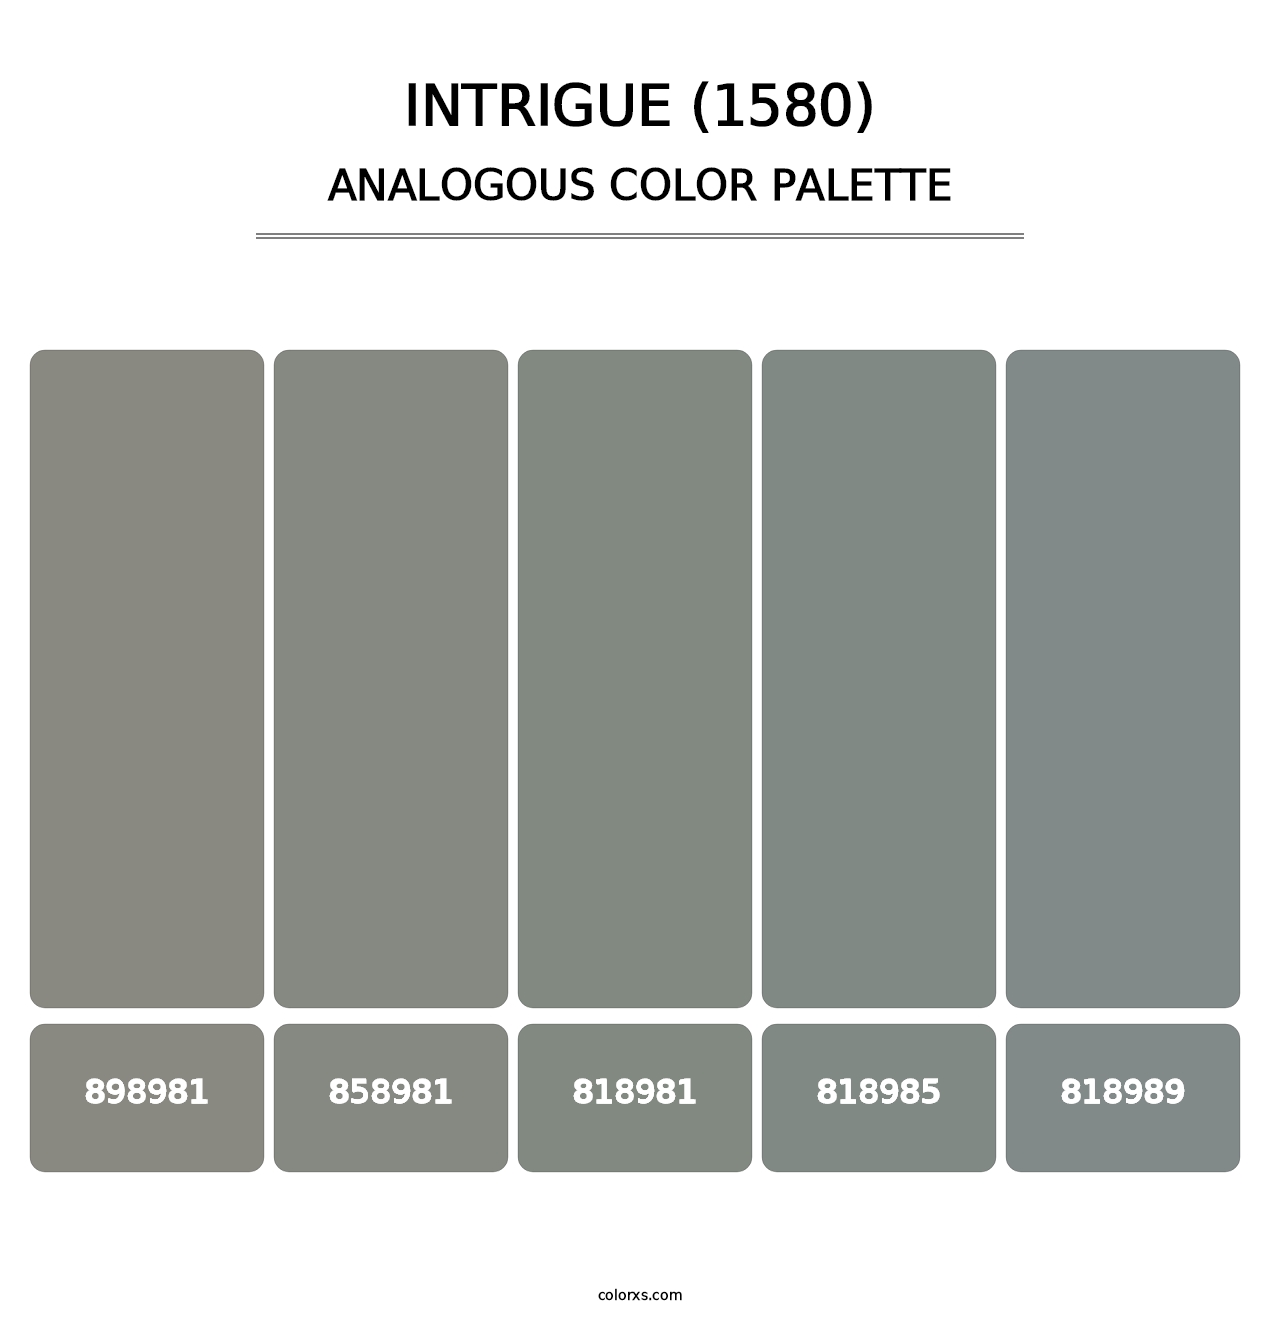 Intrigue (1580) - Analogous Color Palette